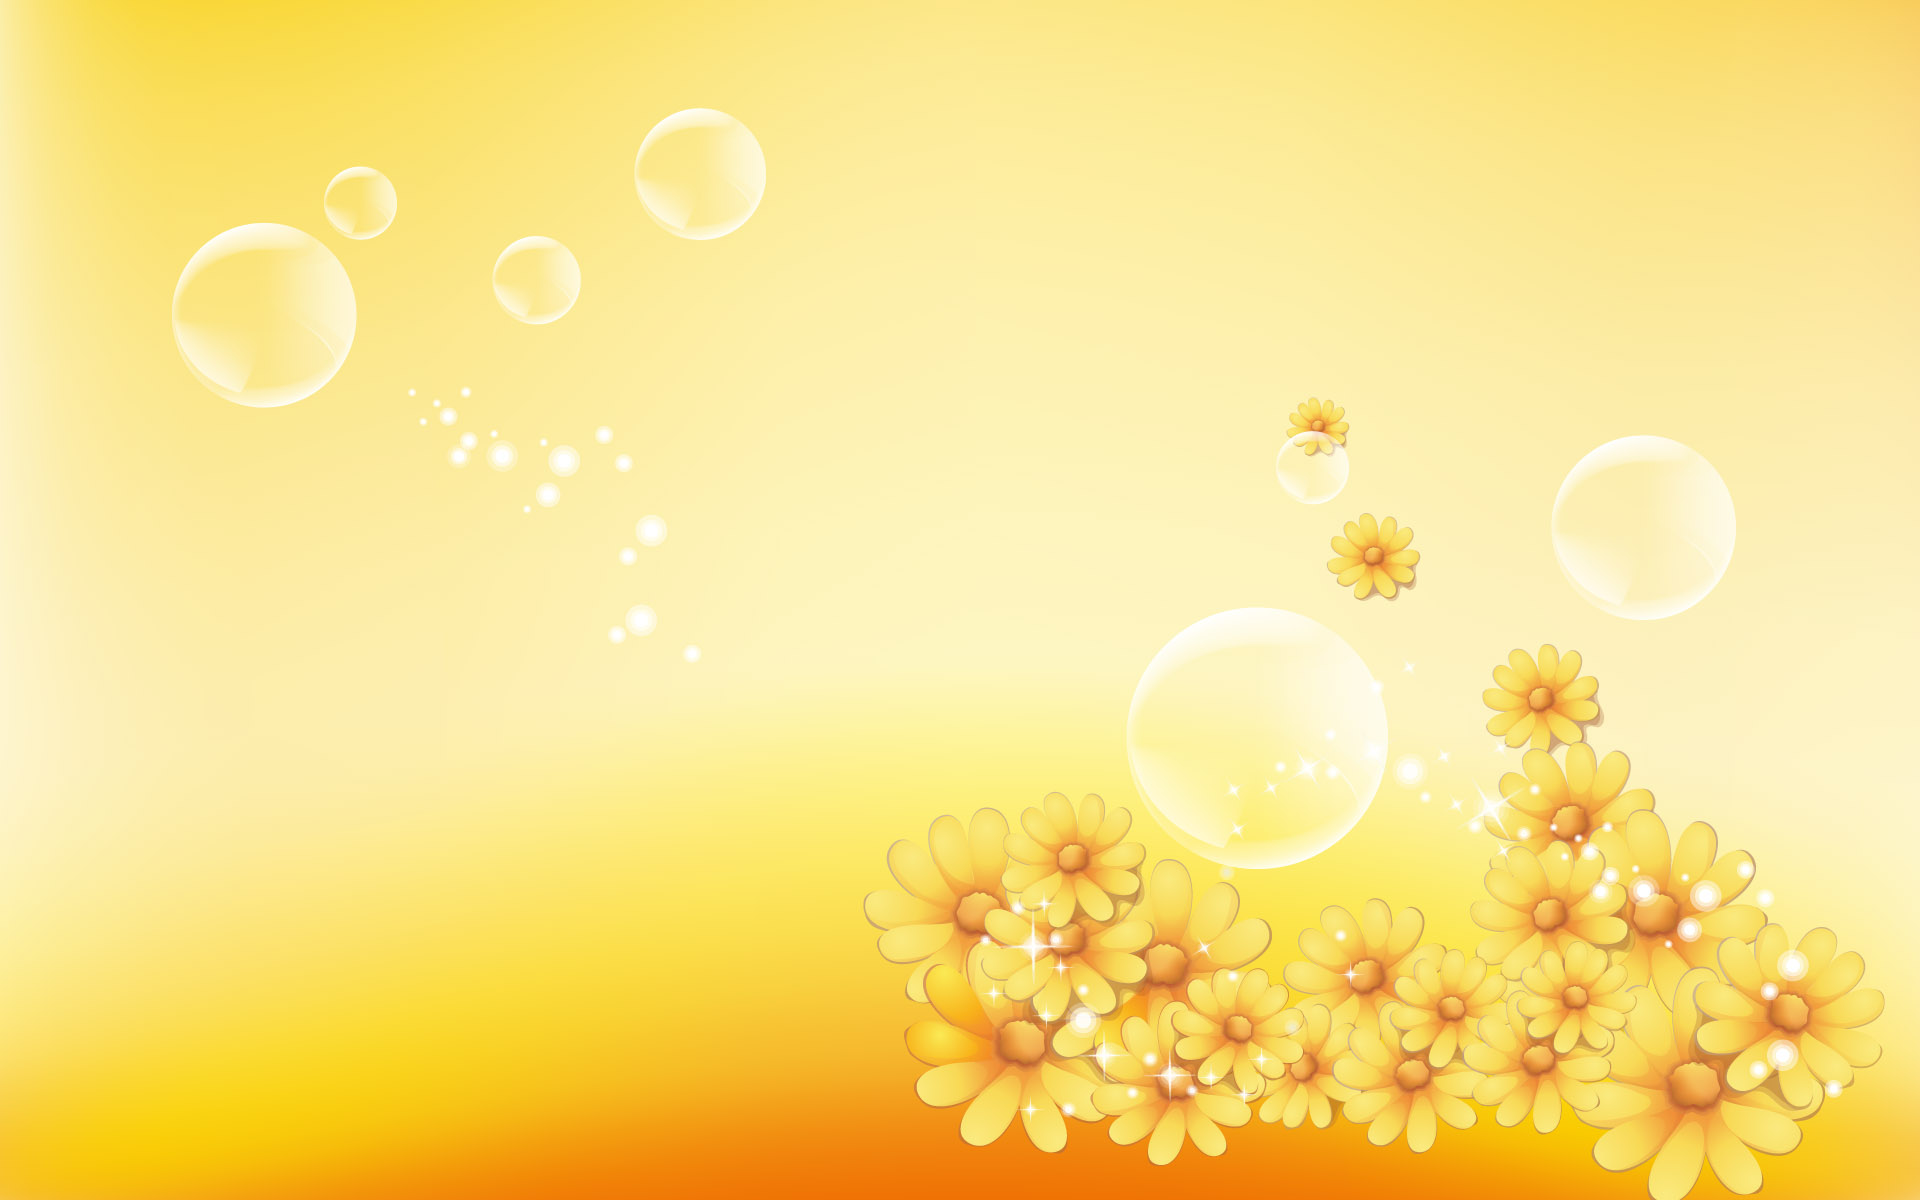 Nền hoa hoàng kim sẽ mang lại cho bạn cảm giác thật ấm áp và yên bình. Với sự kết hợp giữa tông màu vàng và hoa tươi, nó đưa bạn vào một không gian đầy rực rỡ và khơi gợi cảm xúc. Hãy để nền hoa hoàng kim làm cho bạn trở nên tràn đầy năng lượng và cảm hứng.